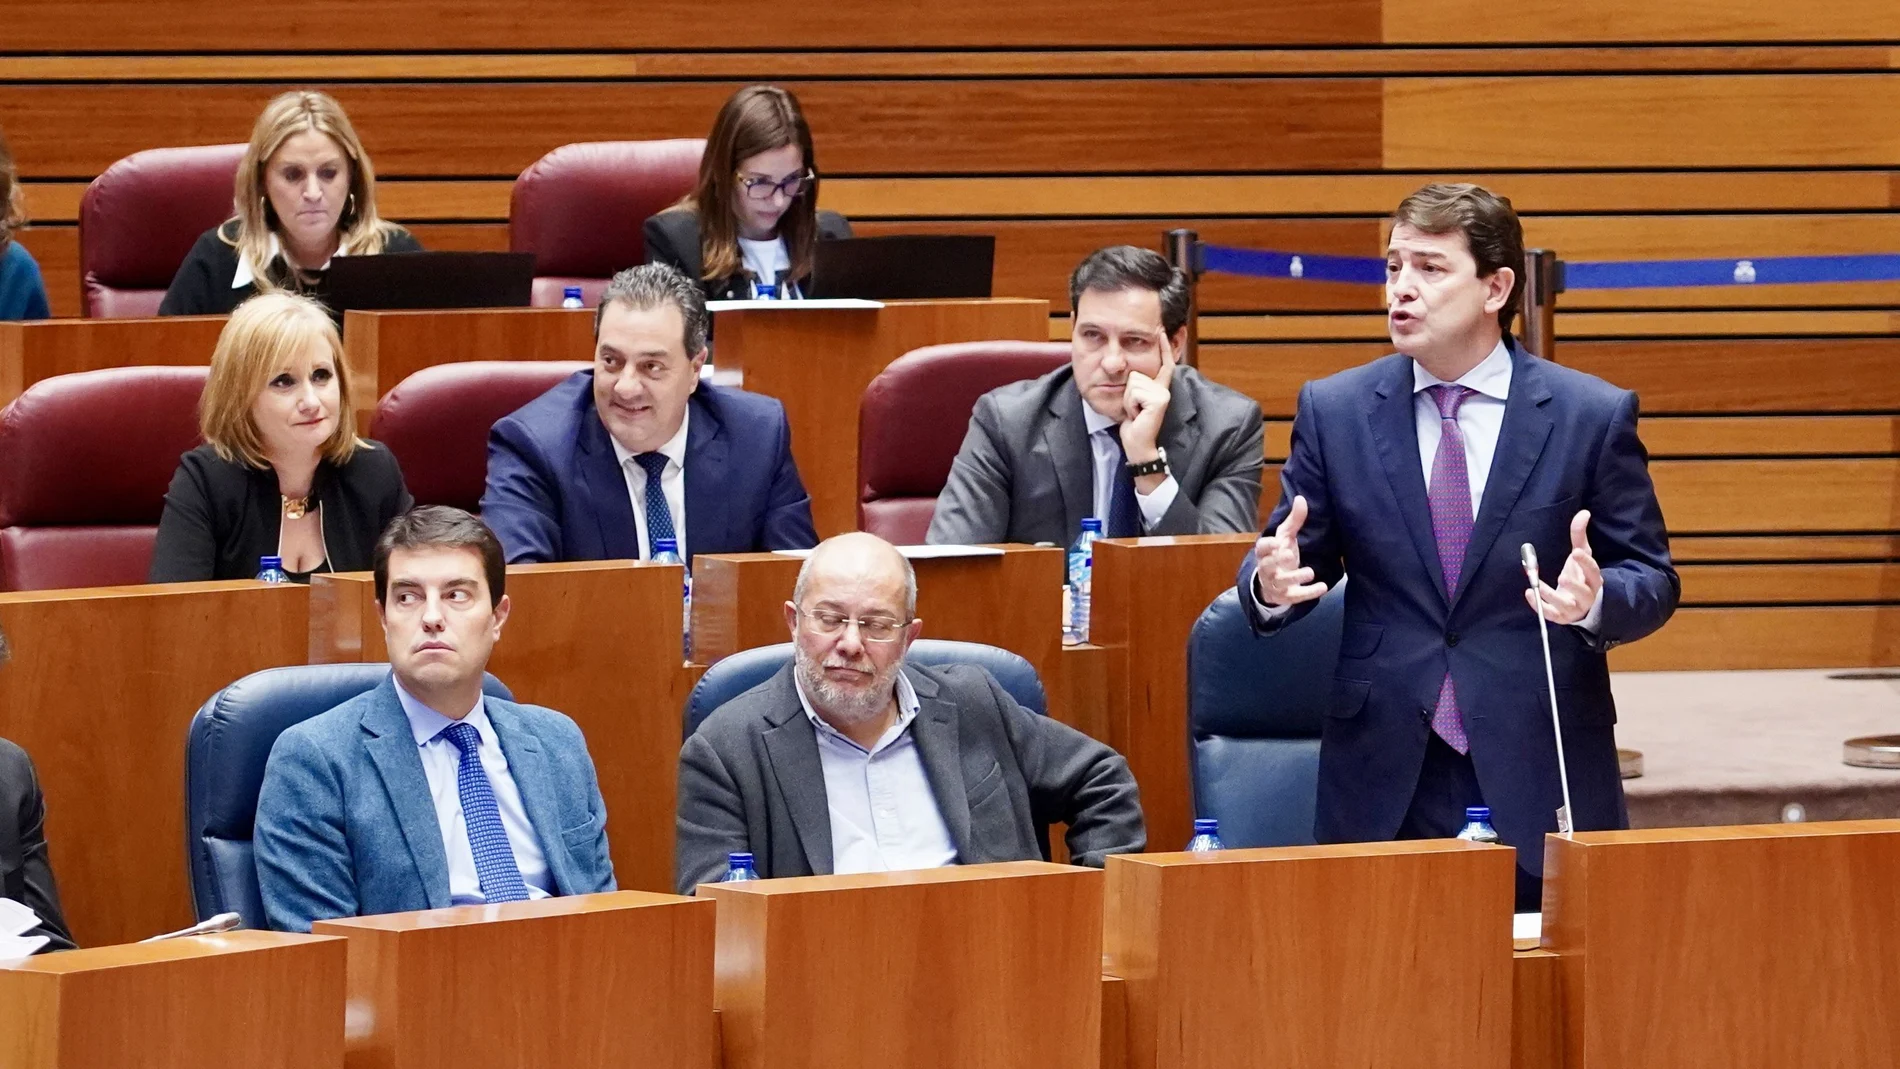 El presidente Fernández Mañueco interviene desde su escaño durante la sesión de control a su Gobierno, en el Pleno de las Cortes